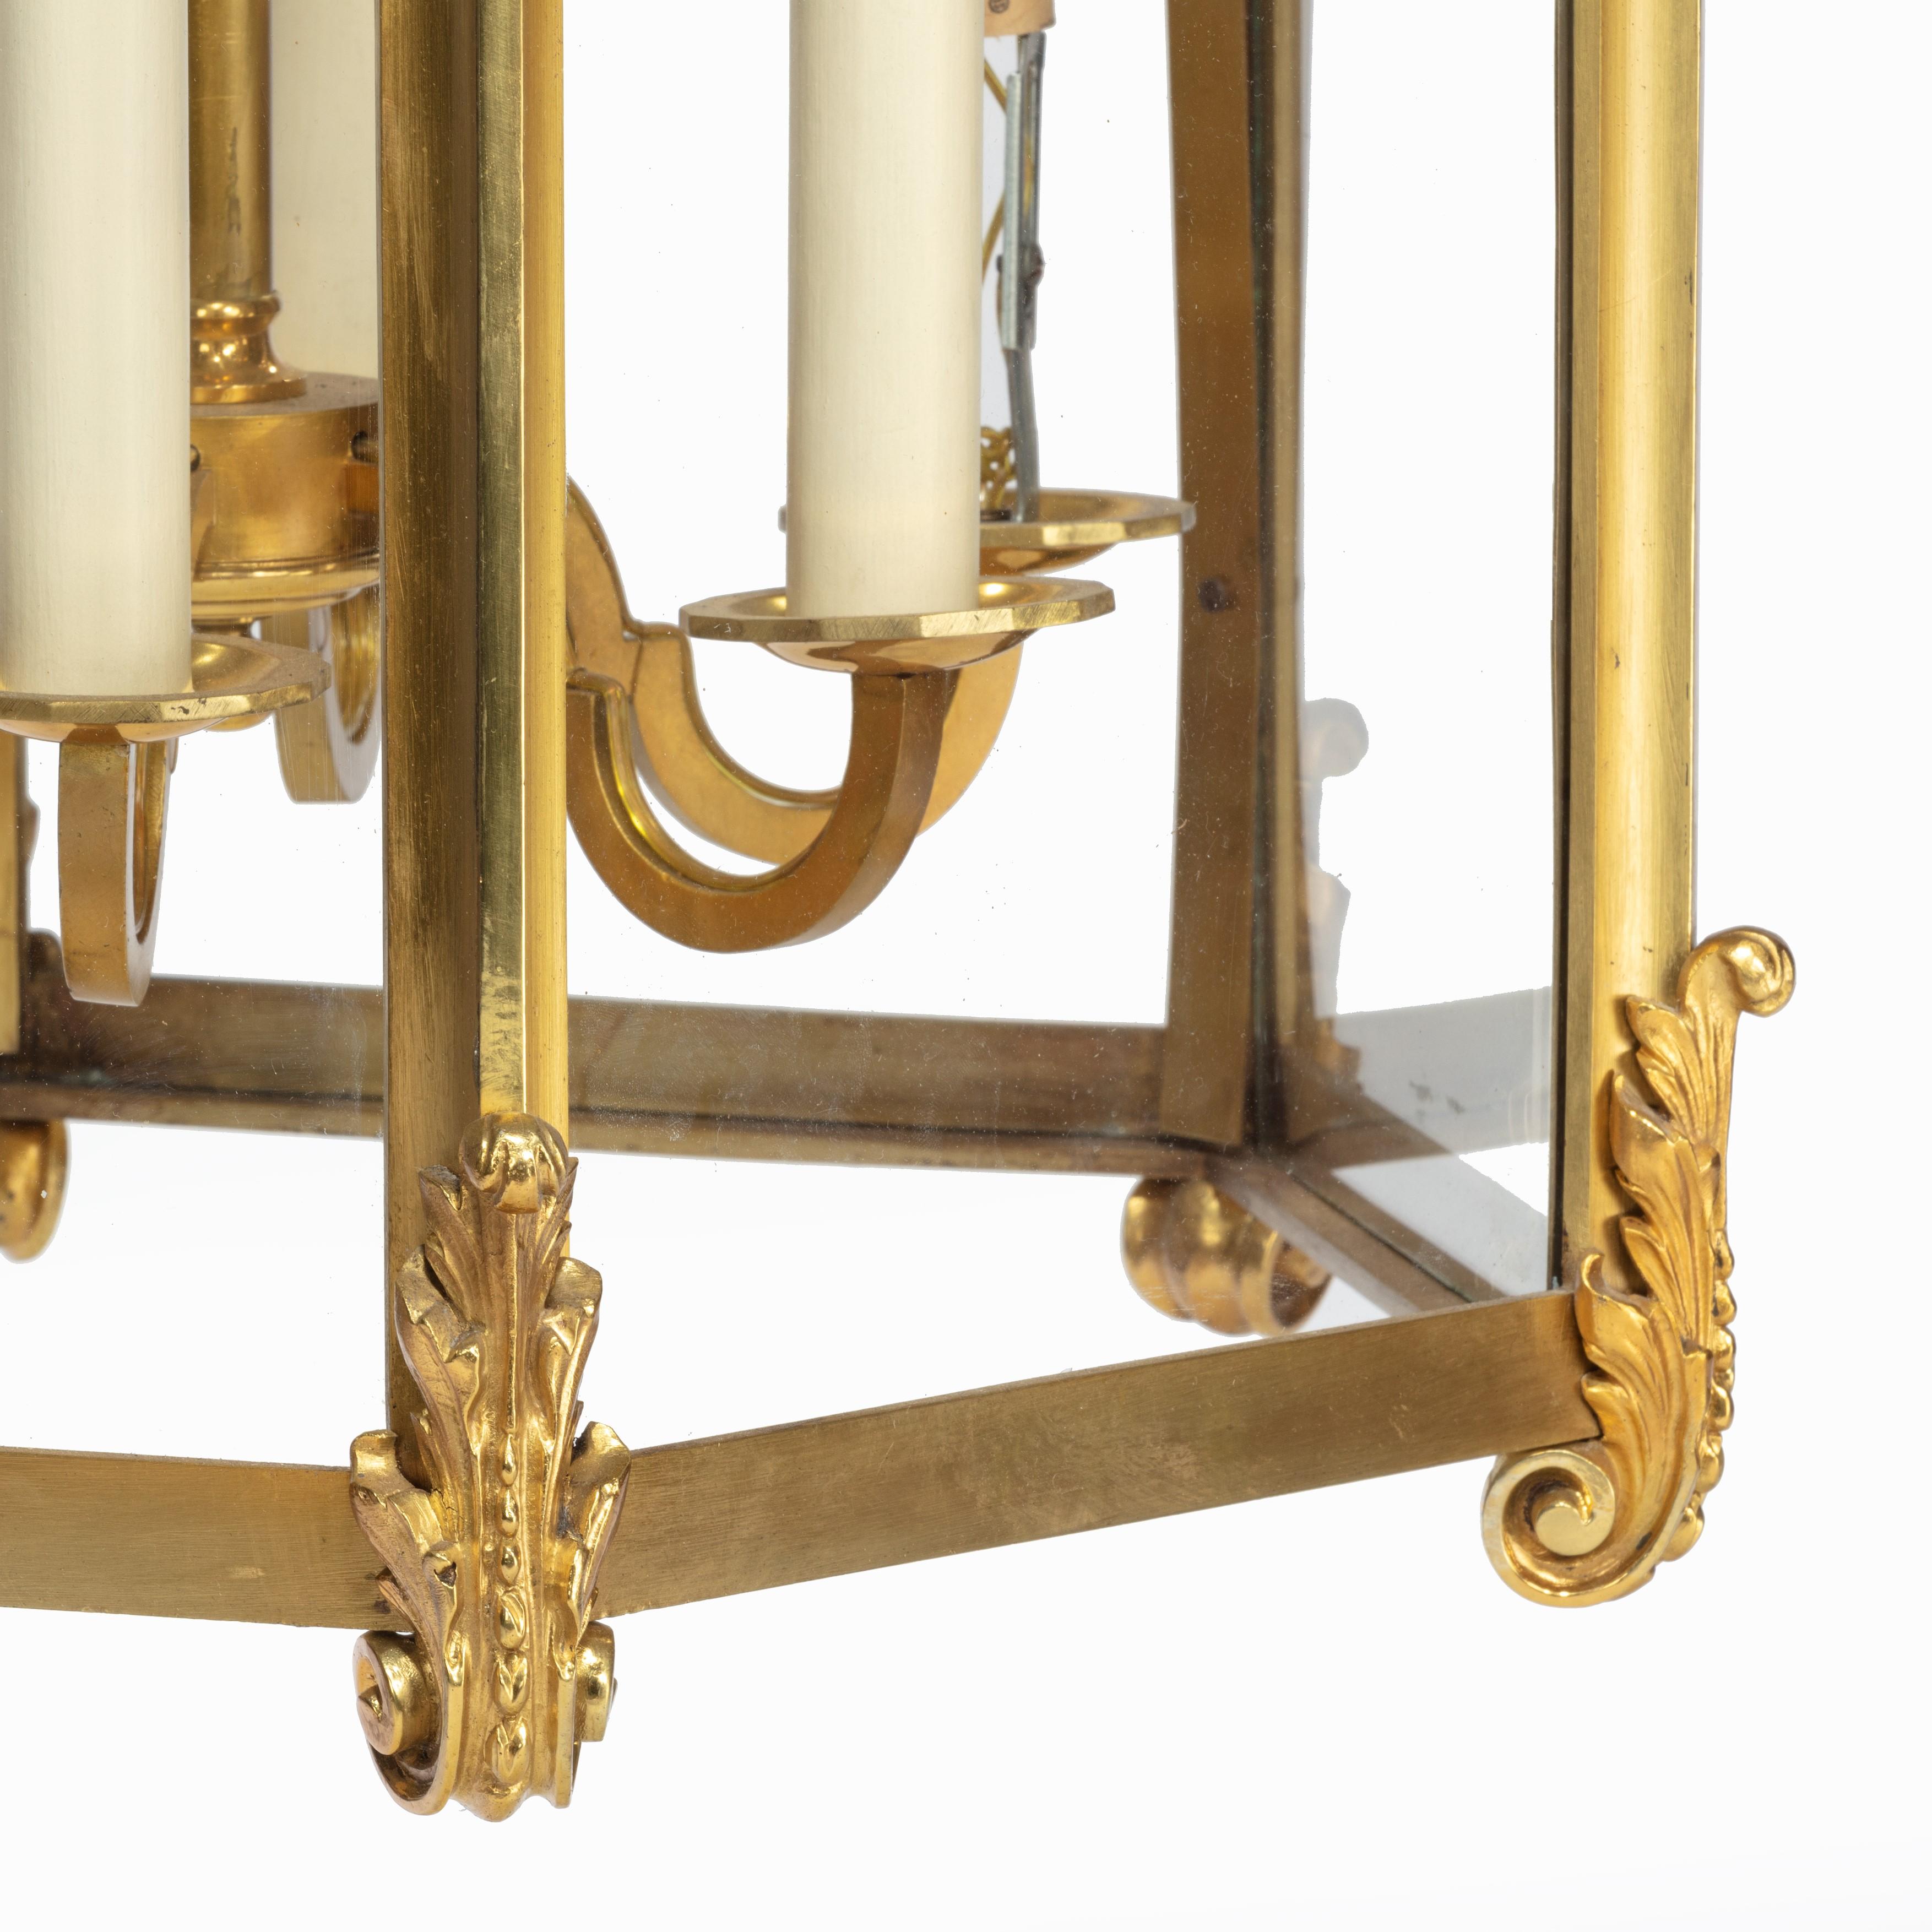 Lanterne suspendue hexagonale en bronze doré, datant de la fin du XIXe siècle, chacune des six faces vitrées est entourée d'une monture feuillagée à enroulements centrée sur une palmette trilobée.